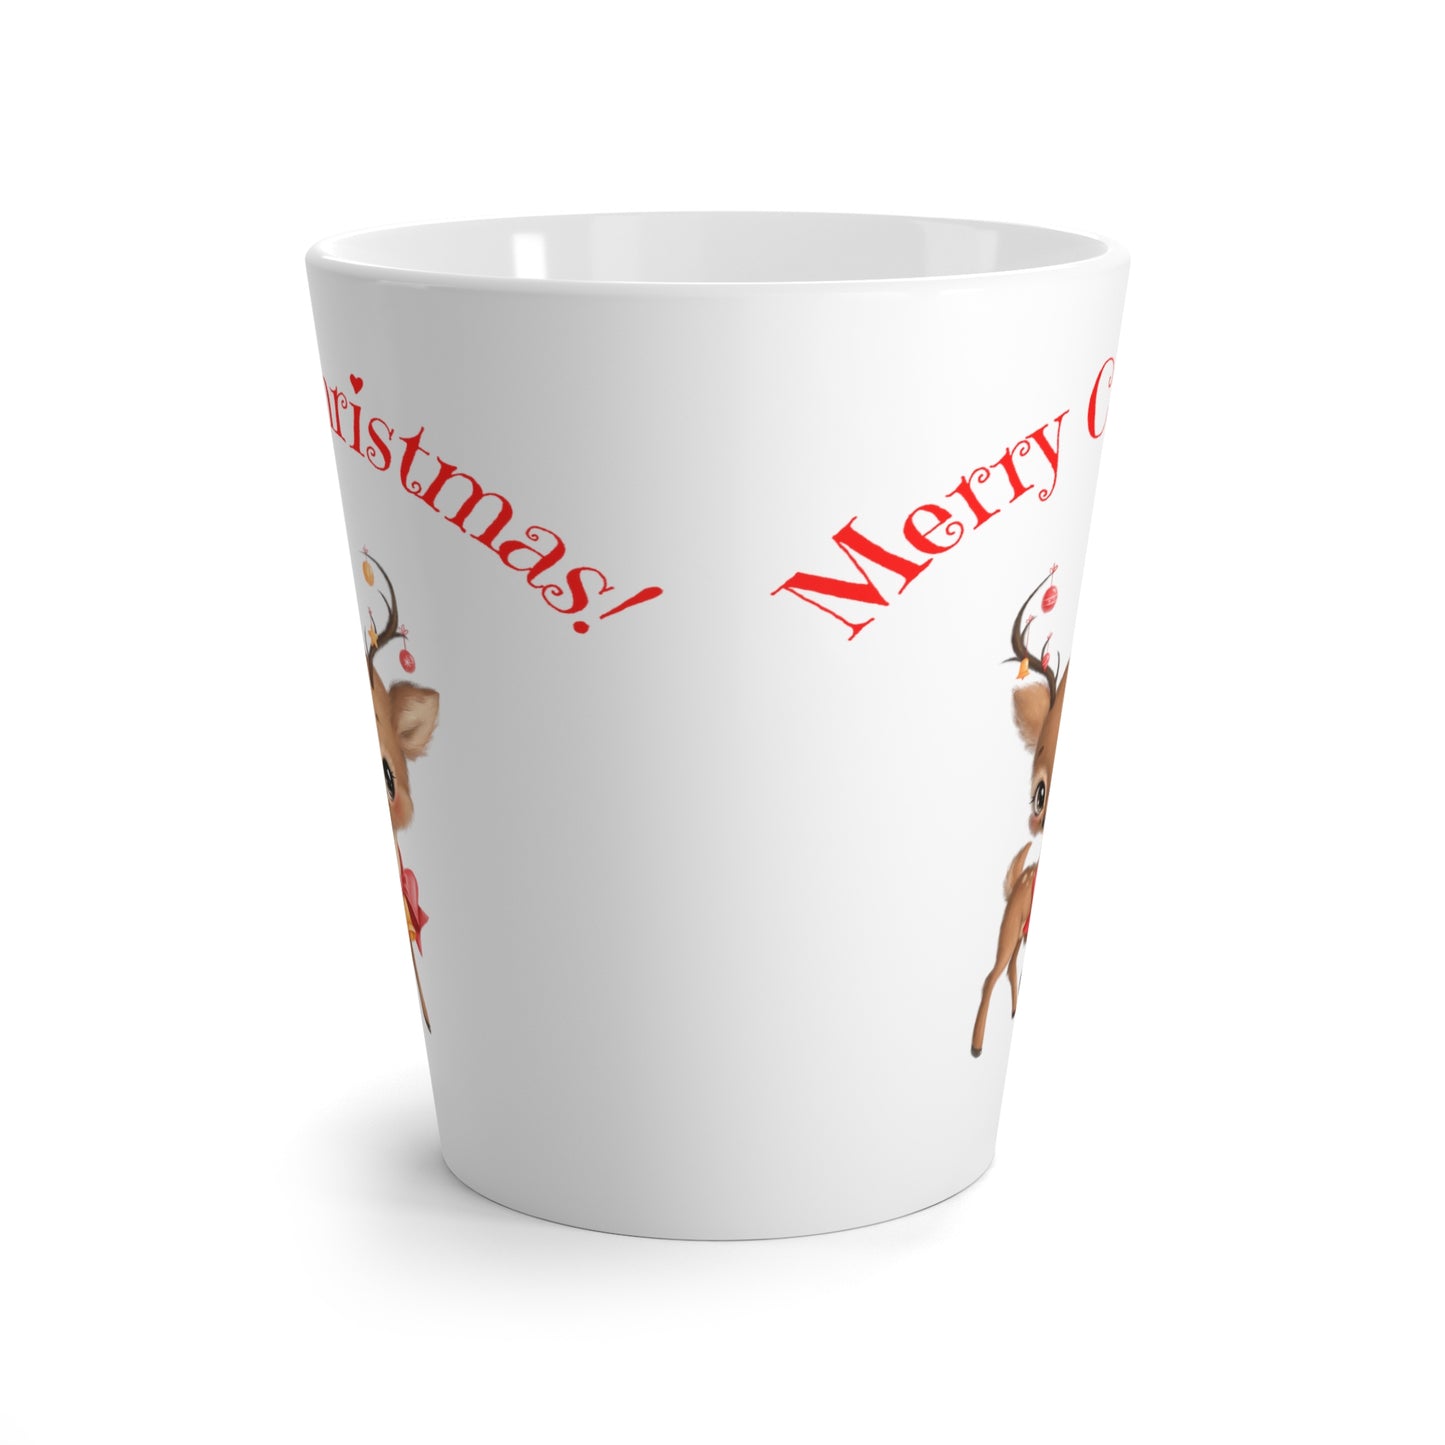 Merry Christmas Theme Printed Latte Mug, 12oz